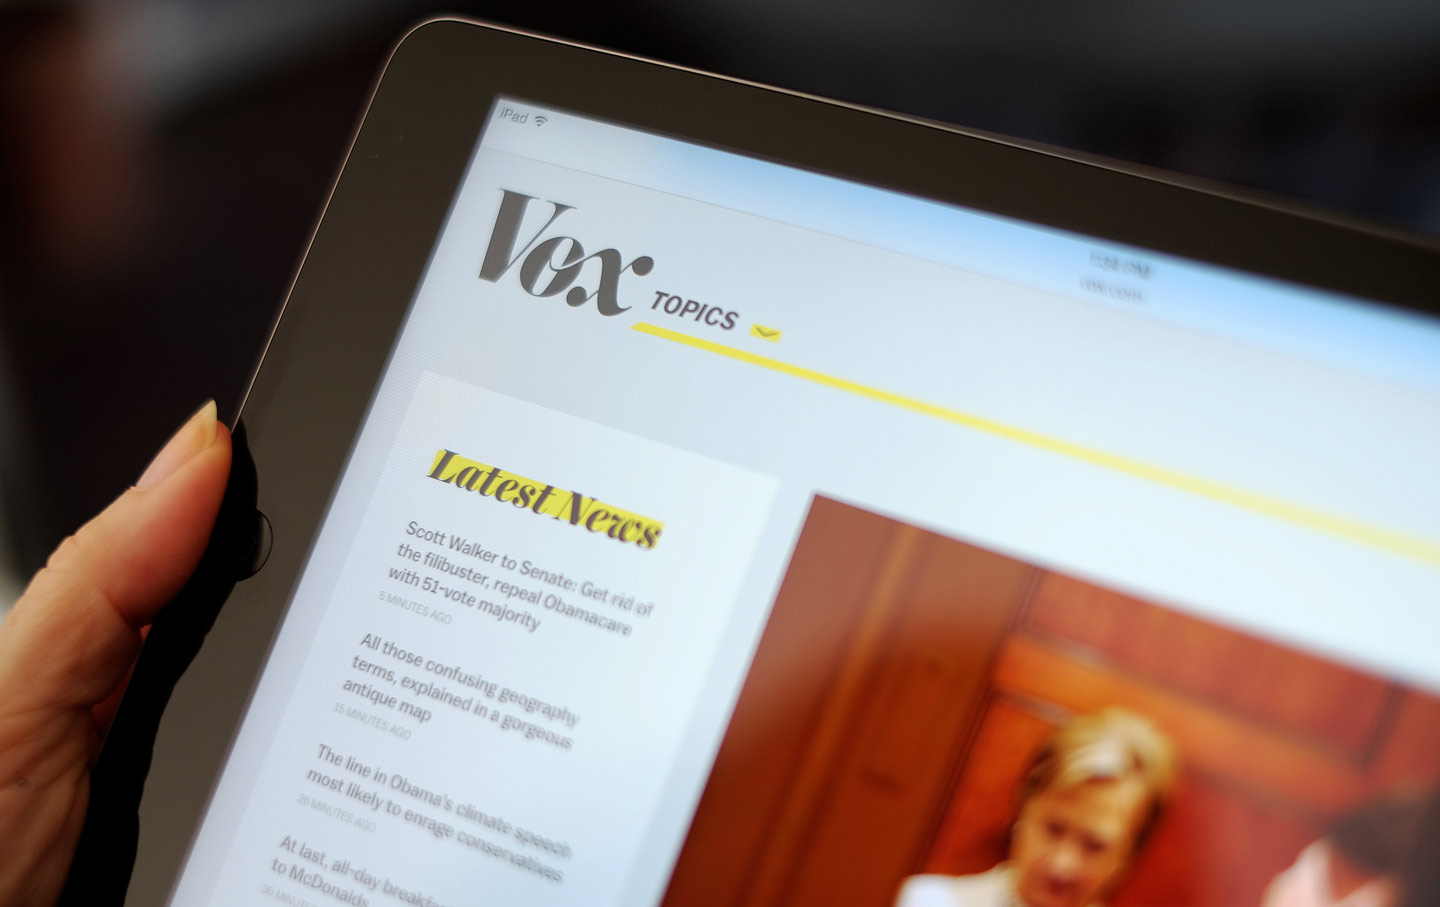 Vox's website on an iPad